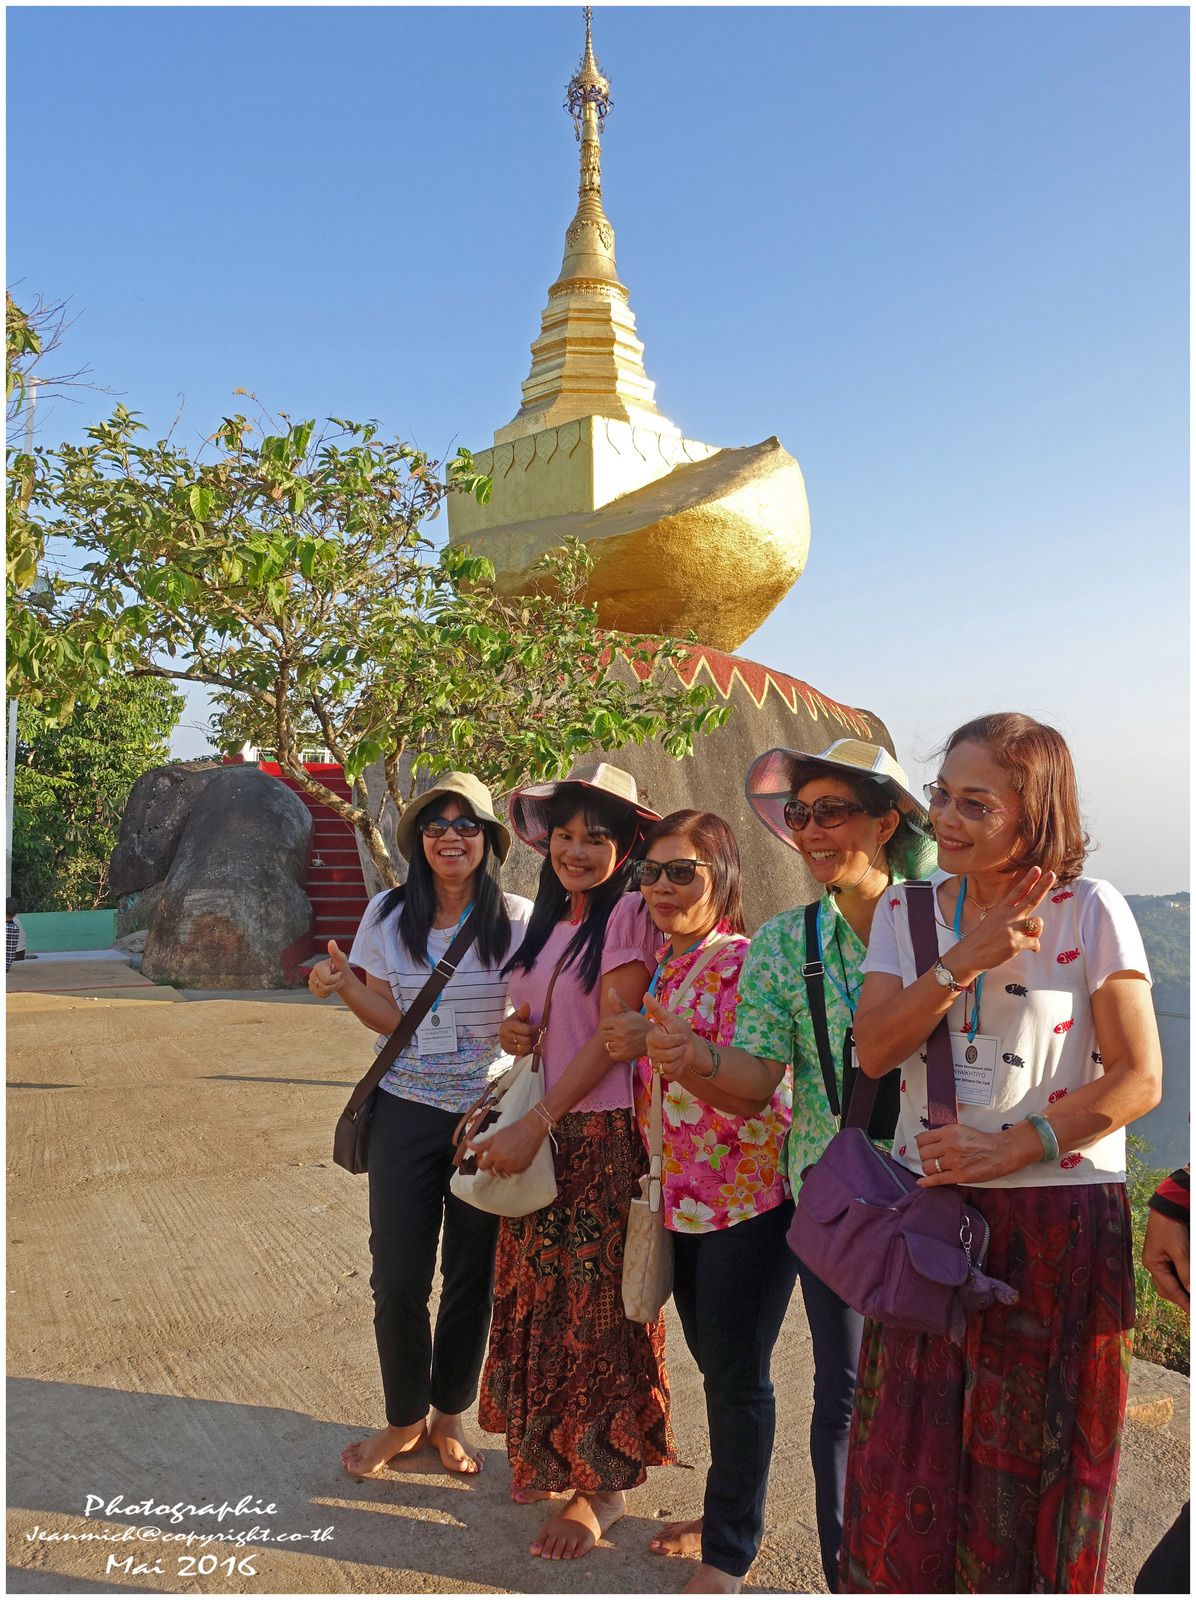 Le rocher d'or Myanmar 1ère partie (Birmanie)